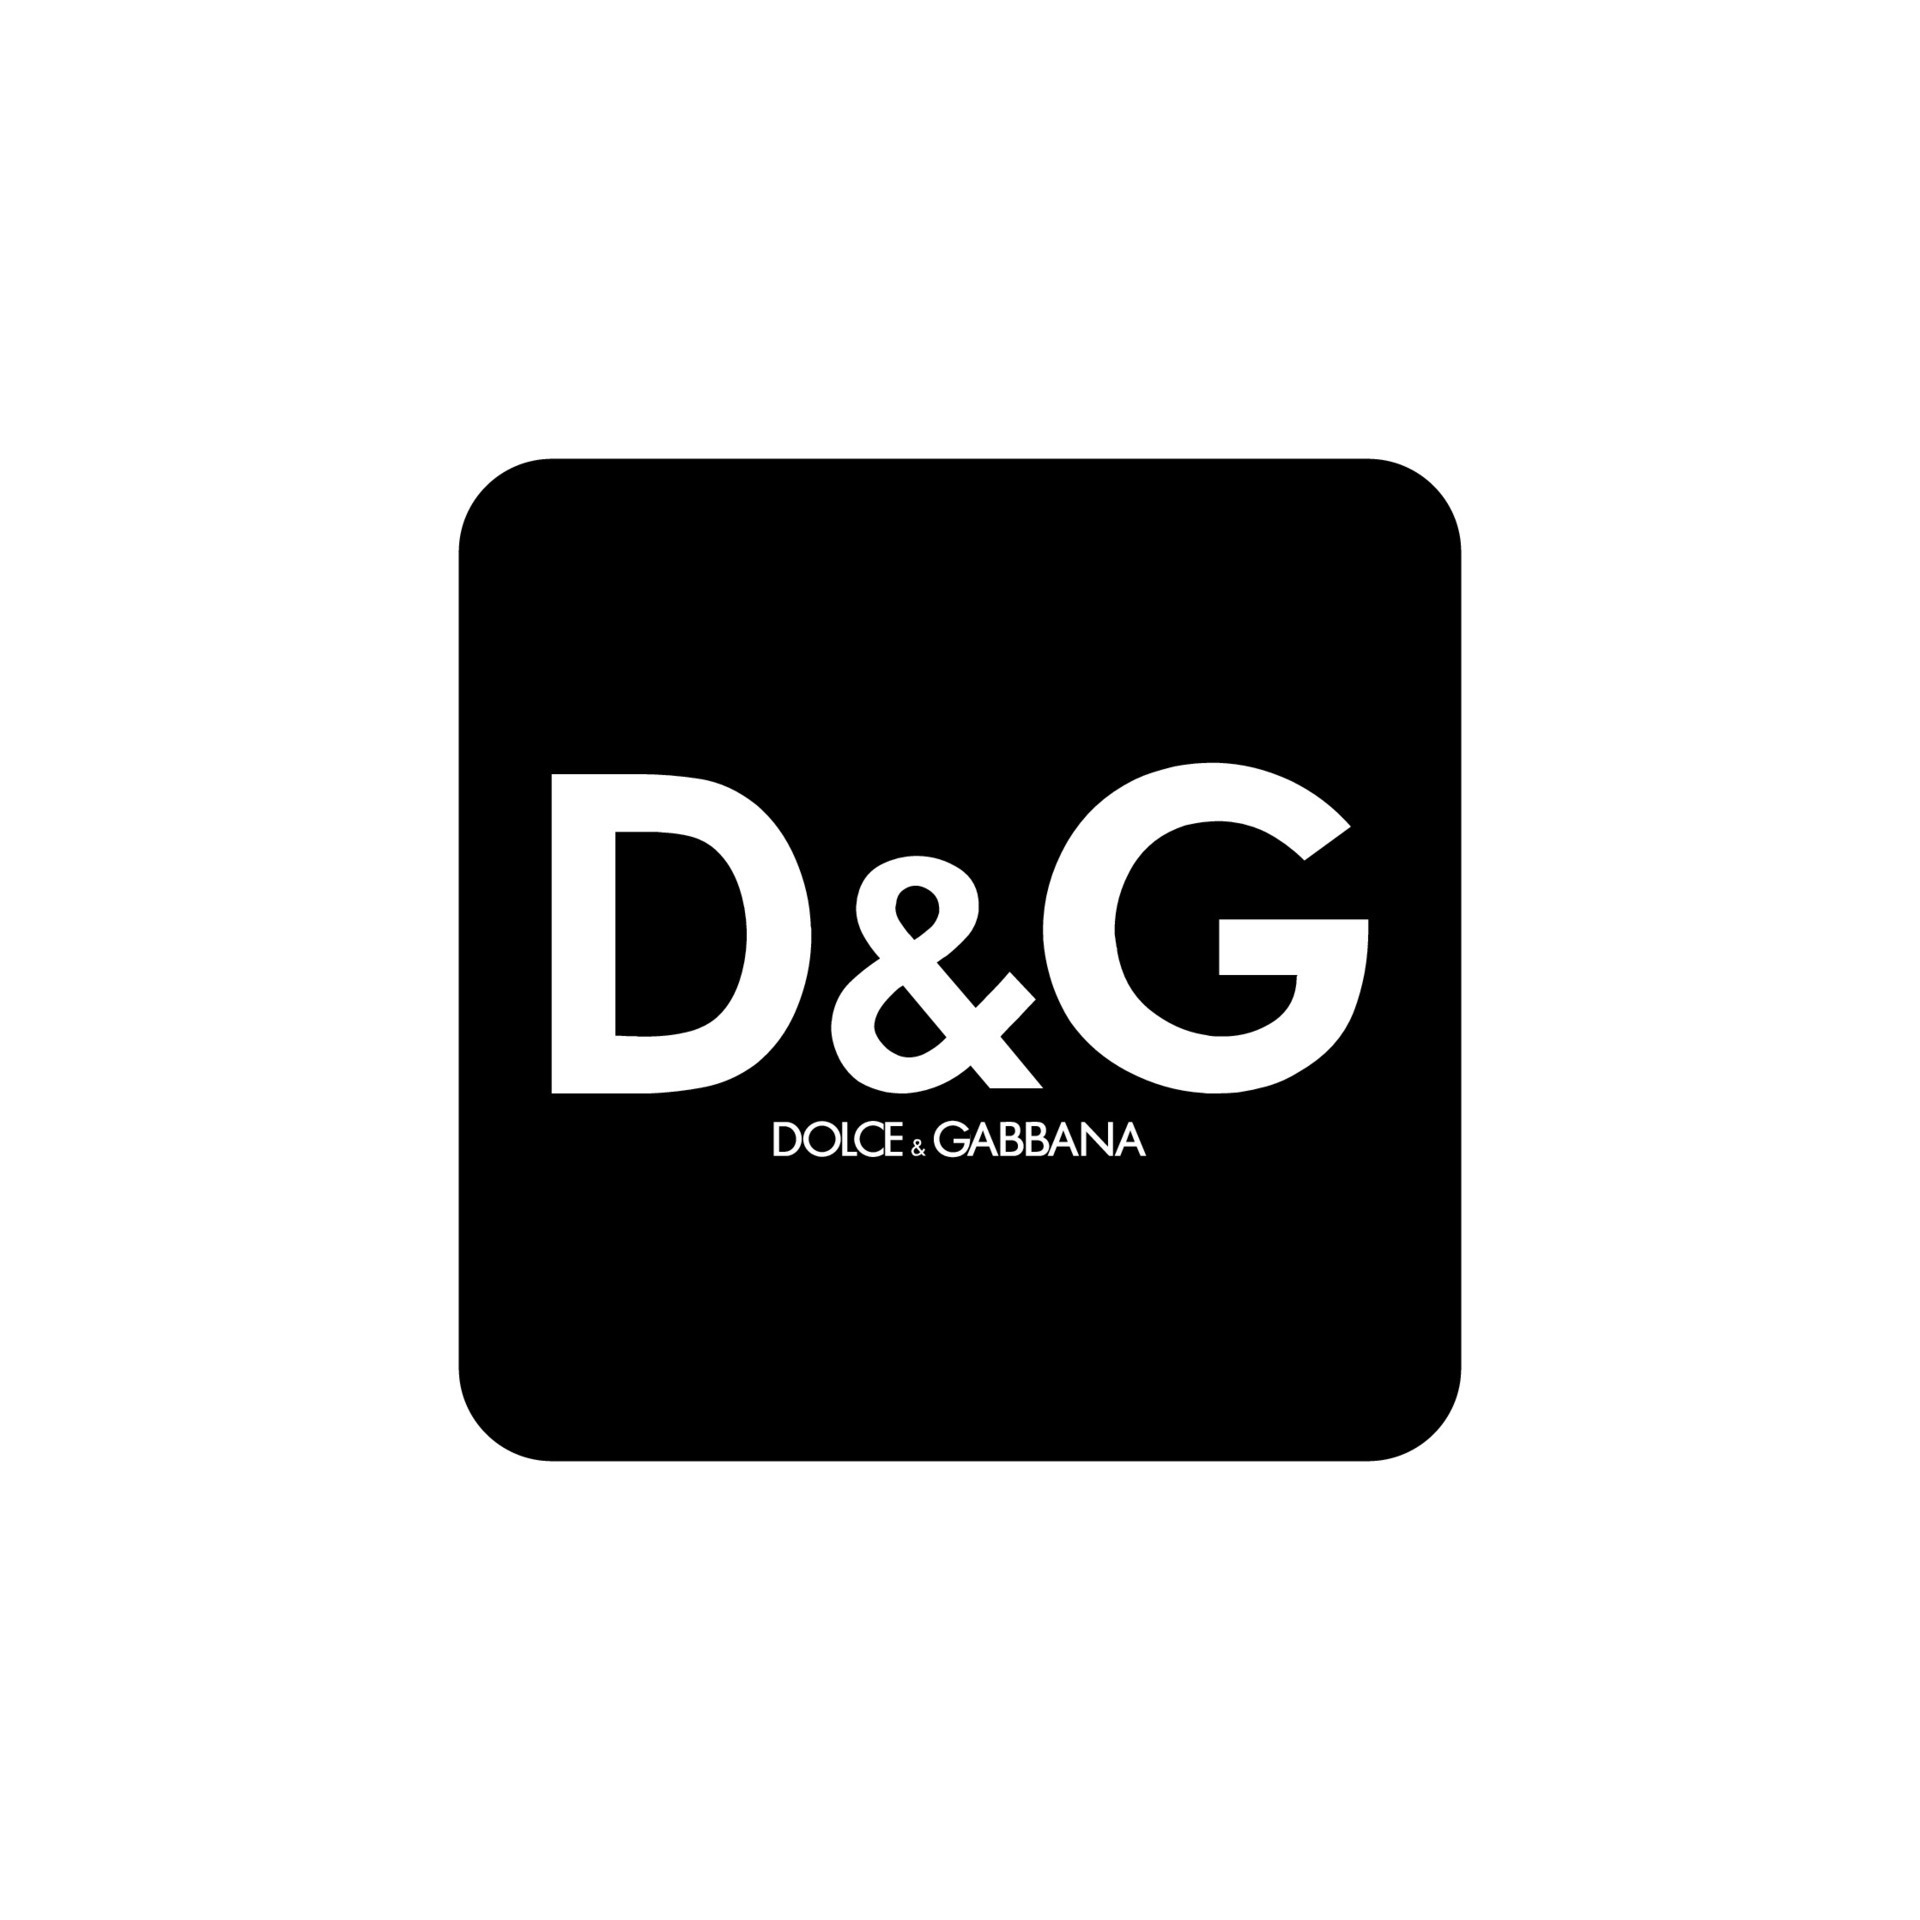 Dolce Gabbana logo editorial vector 26555449 Vector Art at Vecteezy